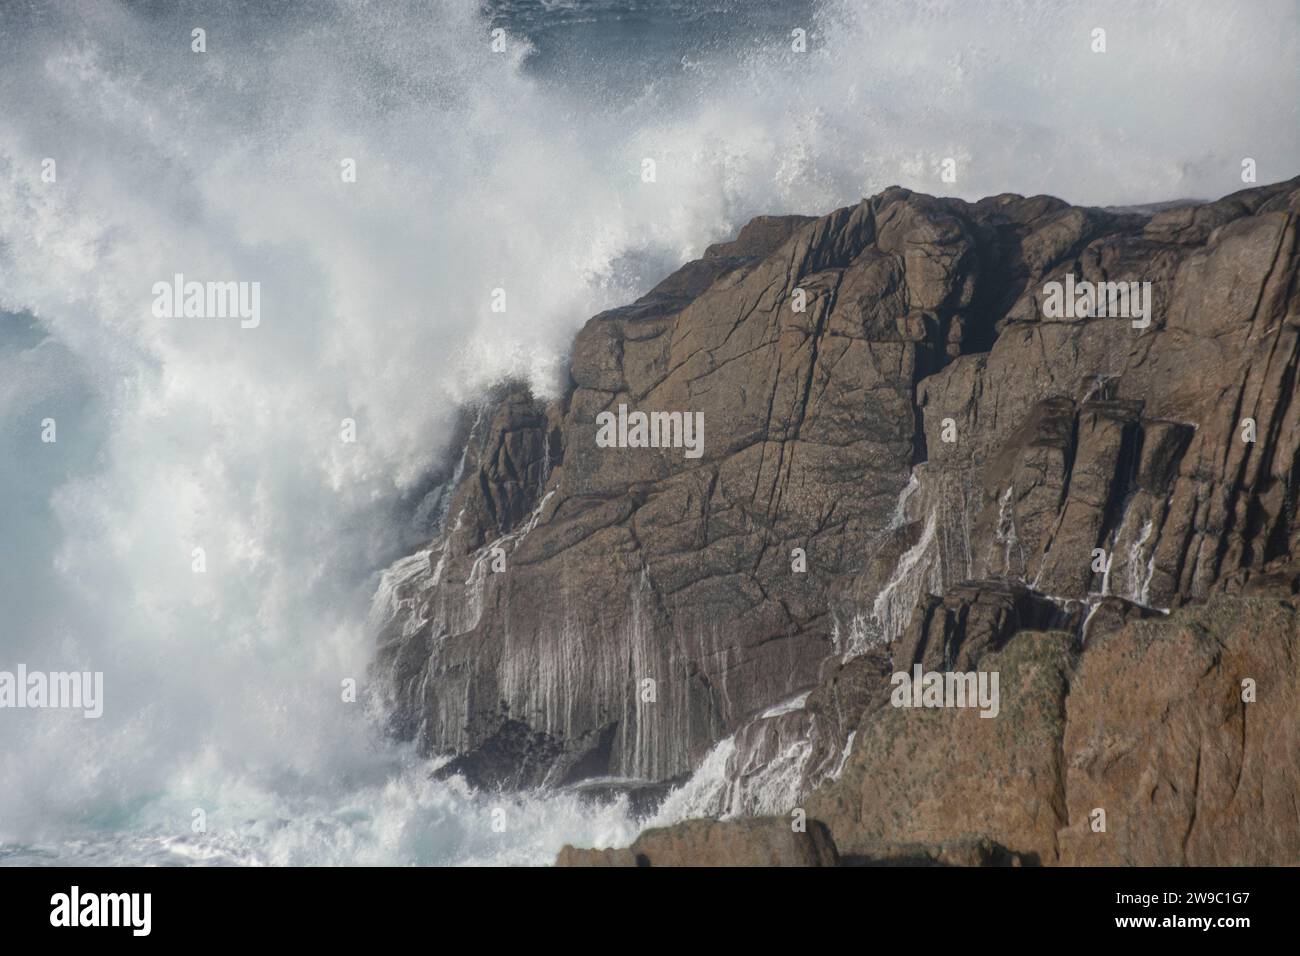 Mächtige Wellen schlagen auf die nördliche Küste der Atlantikinsel Ouessant Banque D'Images